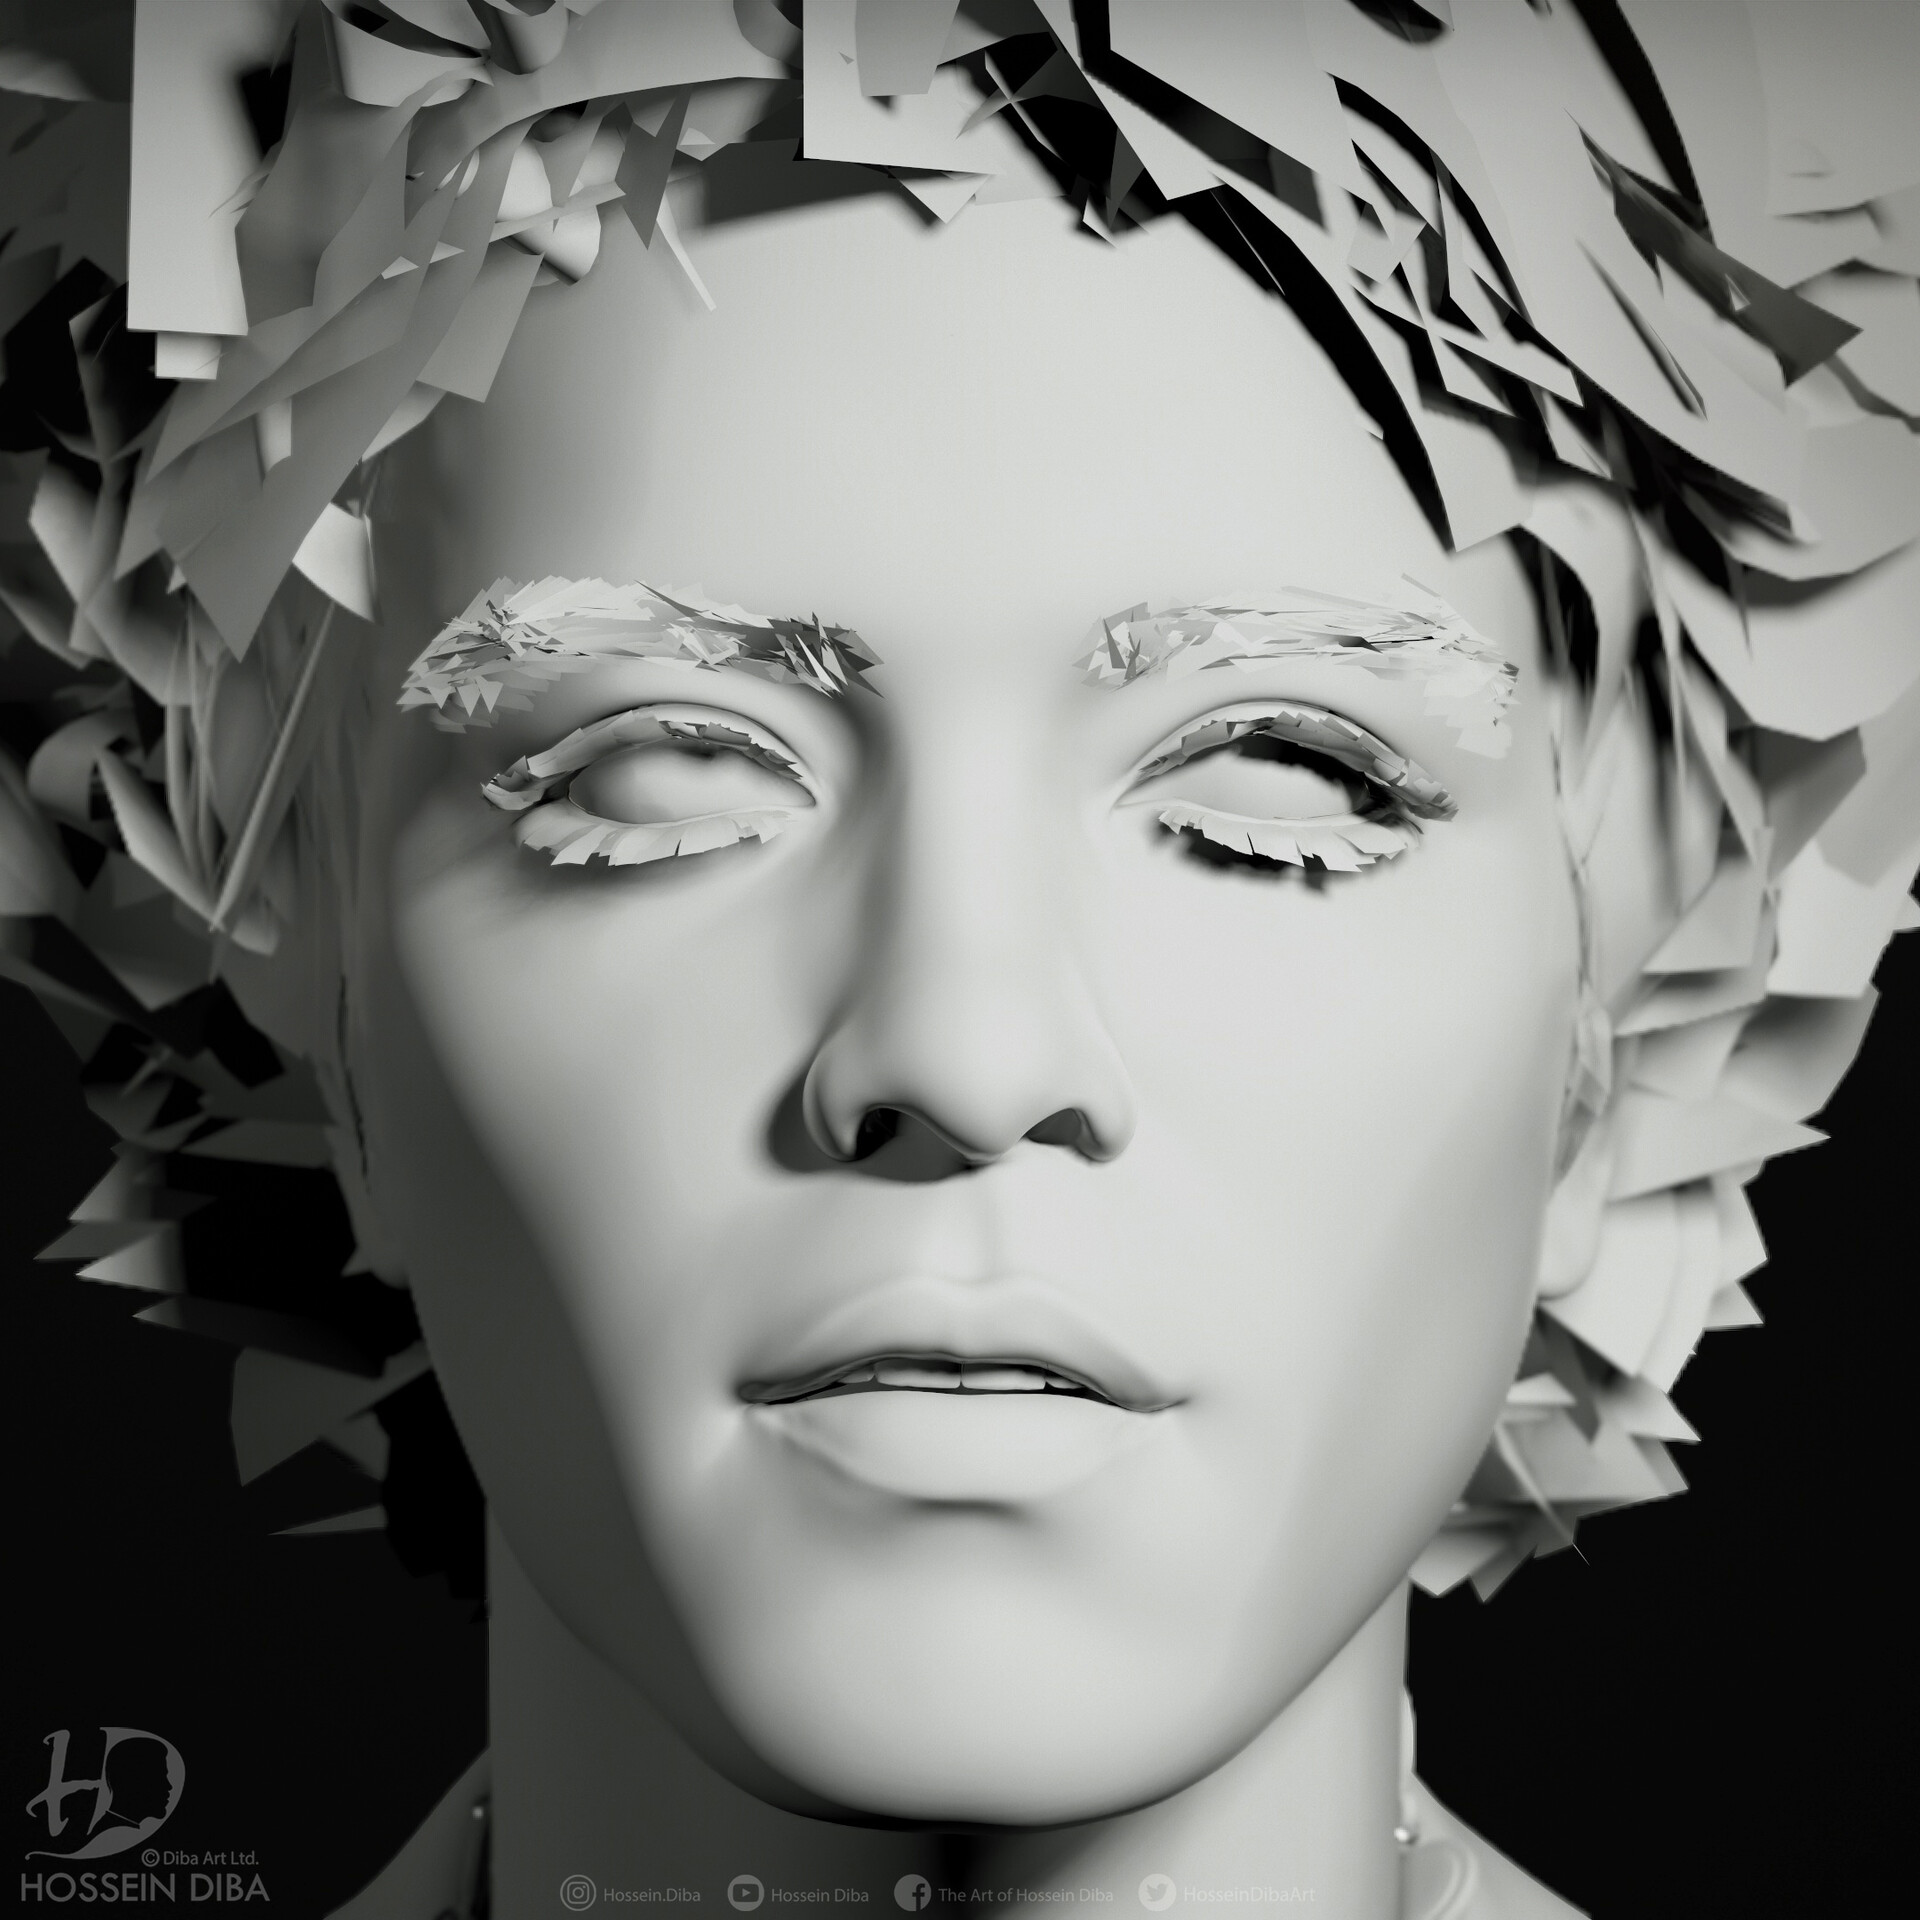 Hossein Diba - 3D Model of Bruno Mars (Real Time)